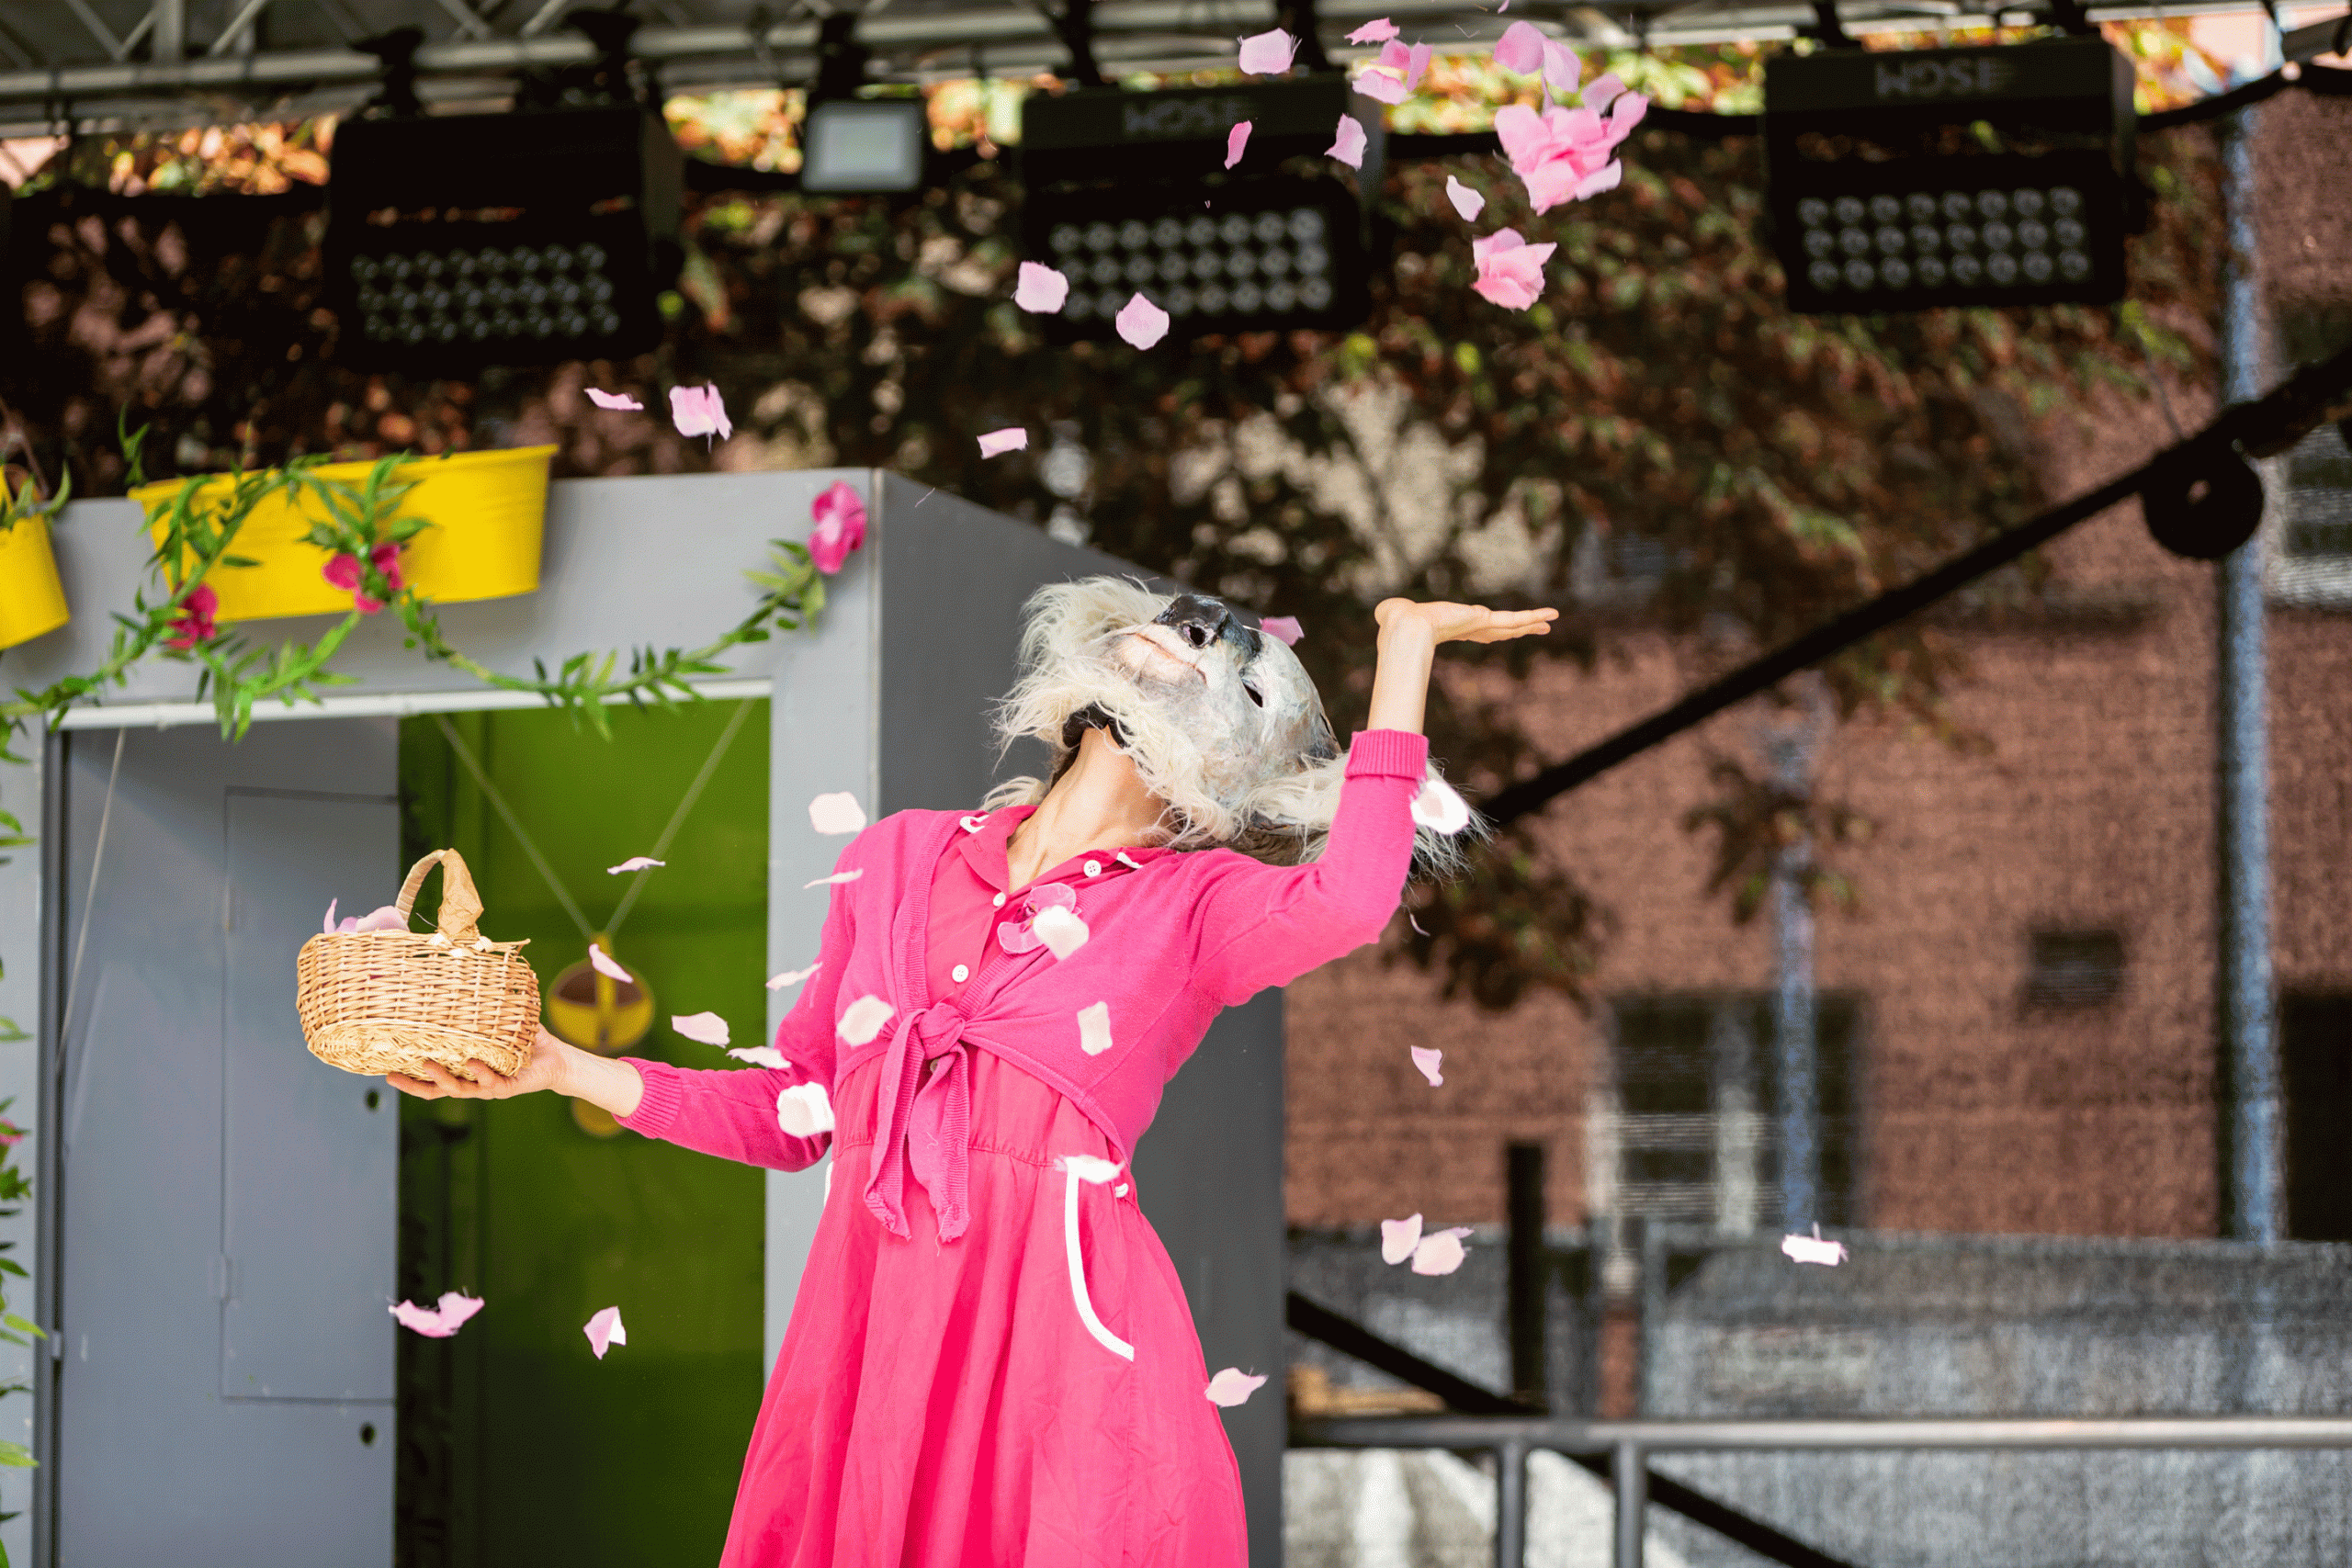 Auf der Bühne ist eine Dame zu sehen, die Blüten in die Höhe wirft.